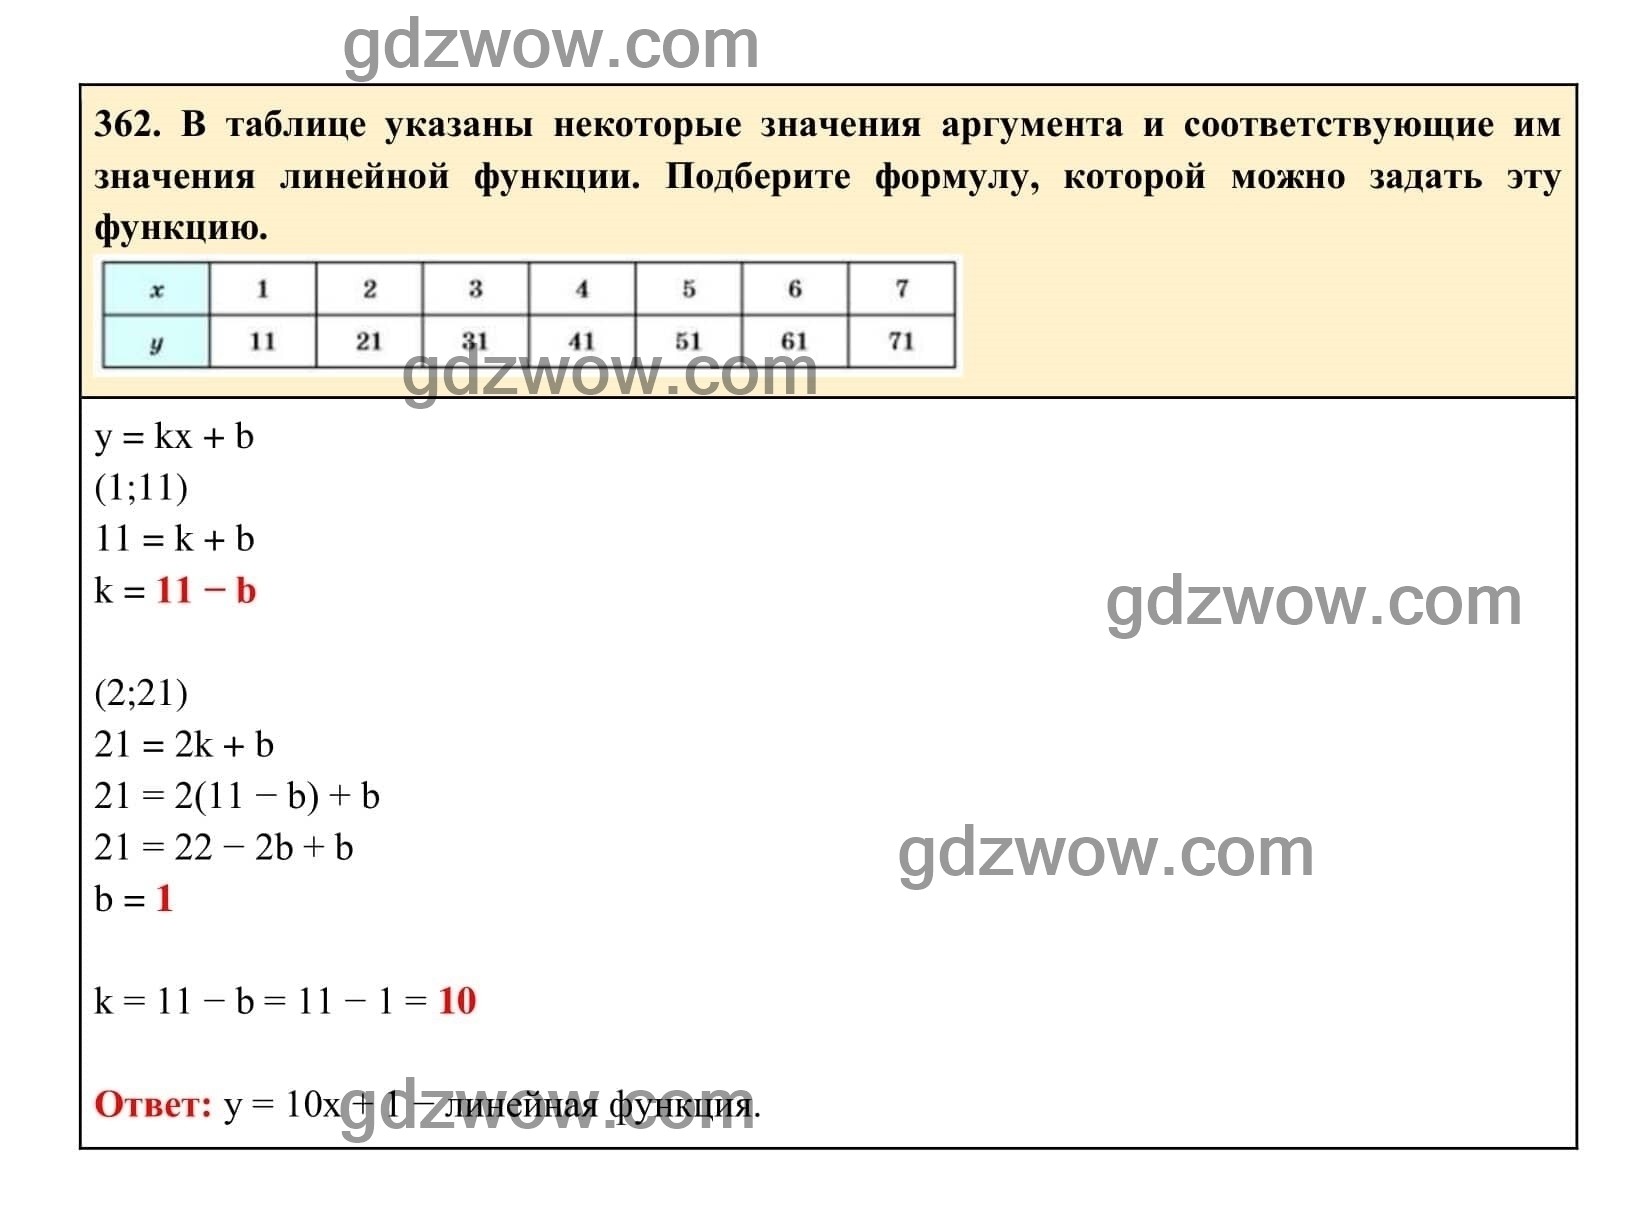 Упражнение 362 - ГДЗ по Алгебре 7 класс Учебник Макарычев (решебник) - GDZwow